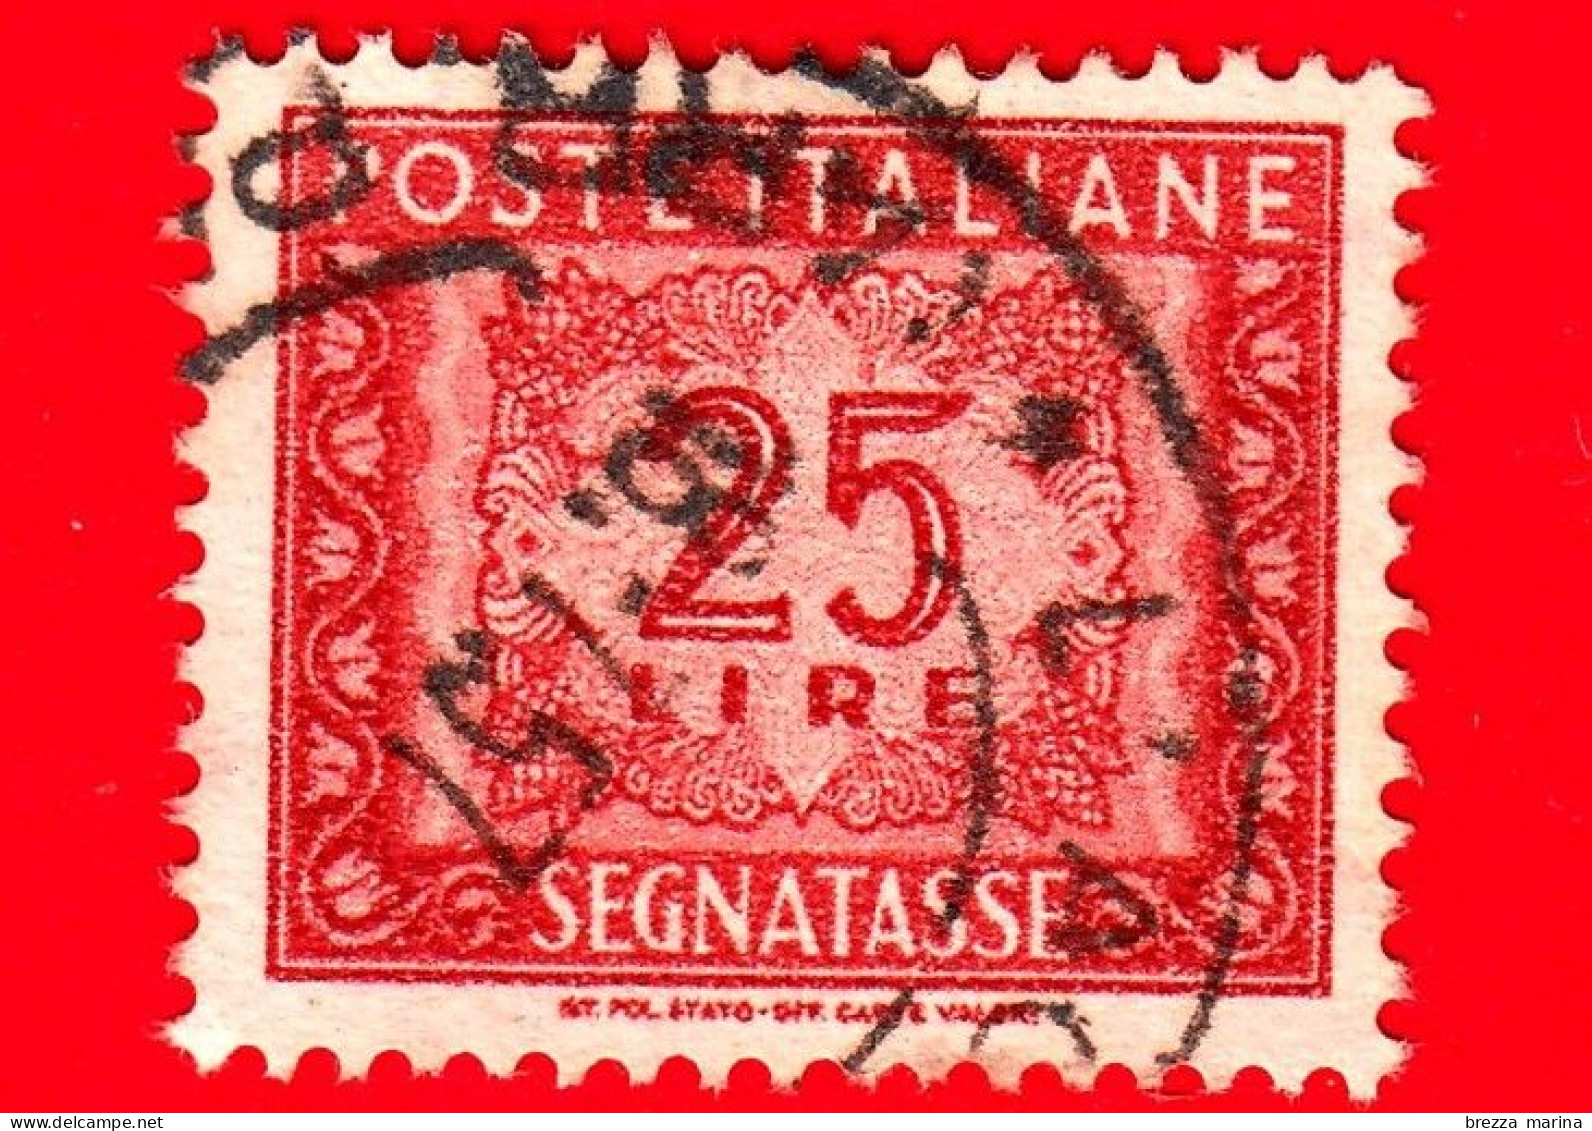 ITALIA - Usato - 1955 - Segnatasse - Cifra E Decorazioni, Filigrana Stella - 25 L. • - Impuestos